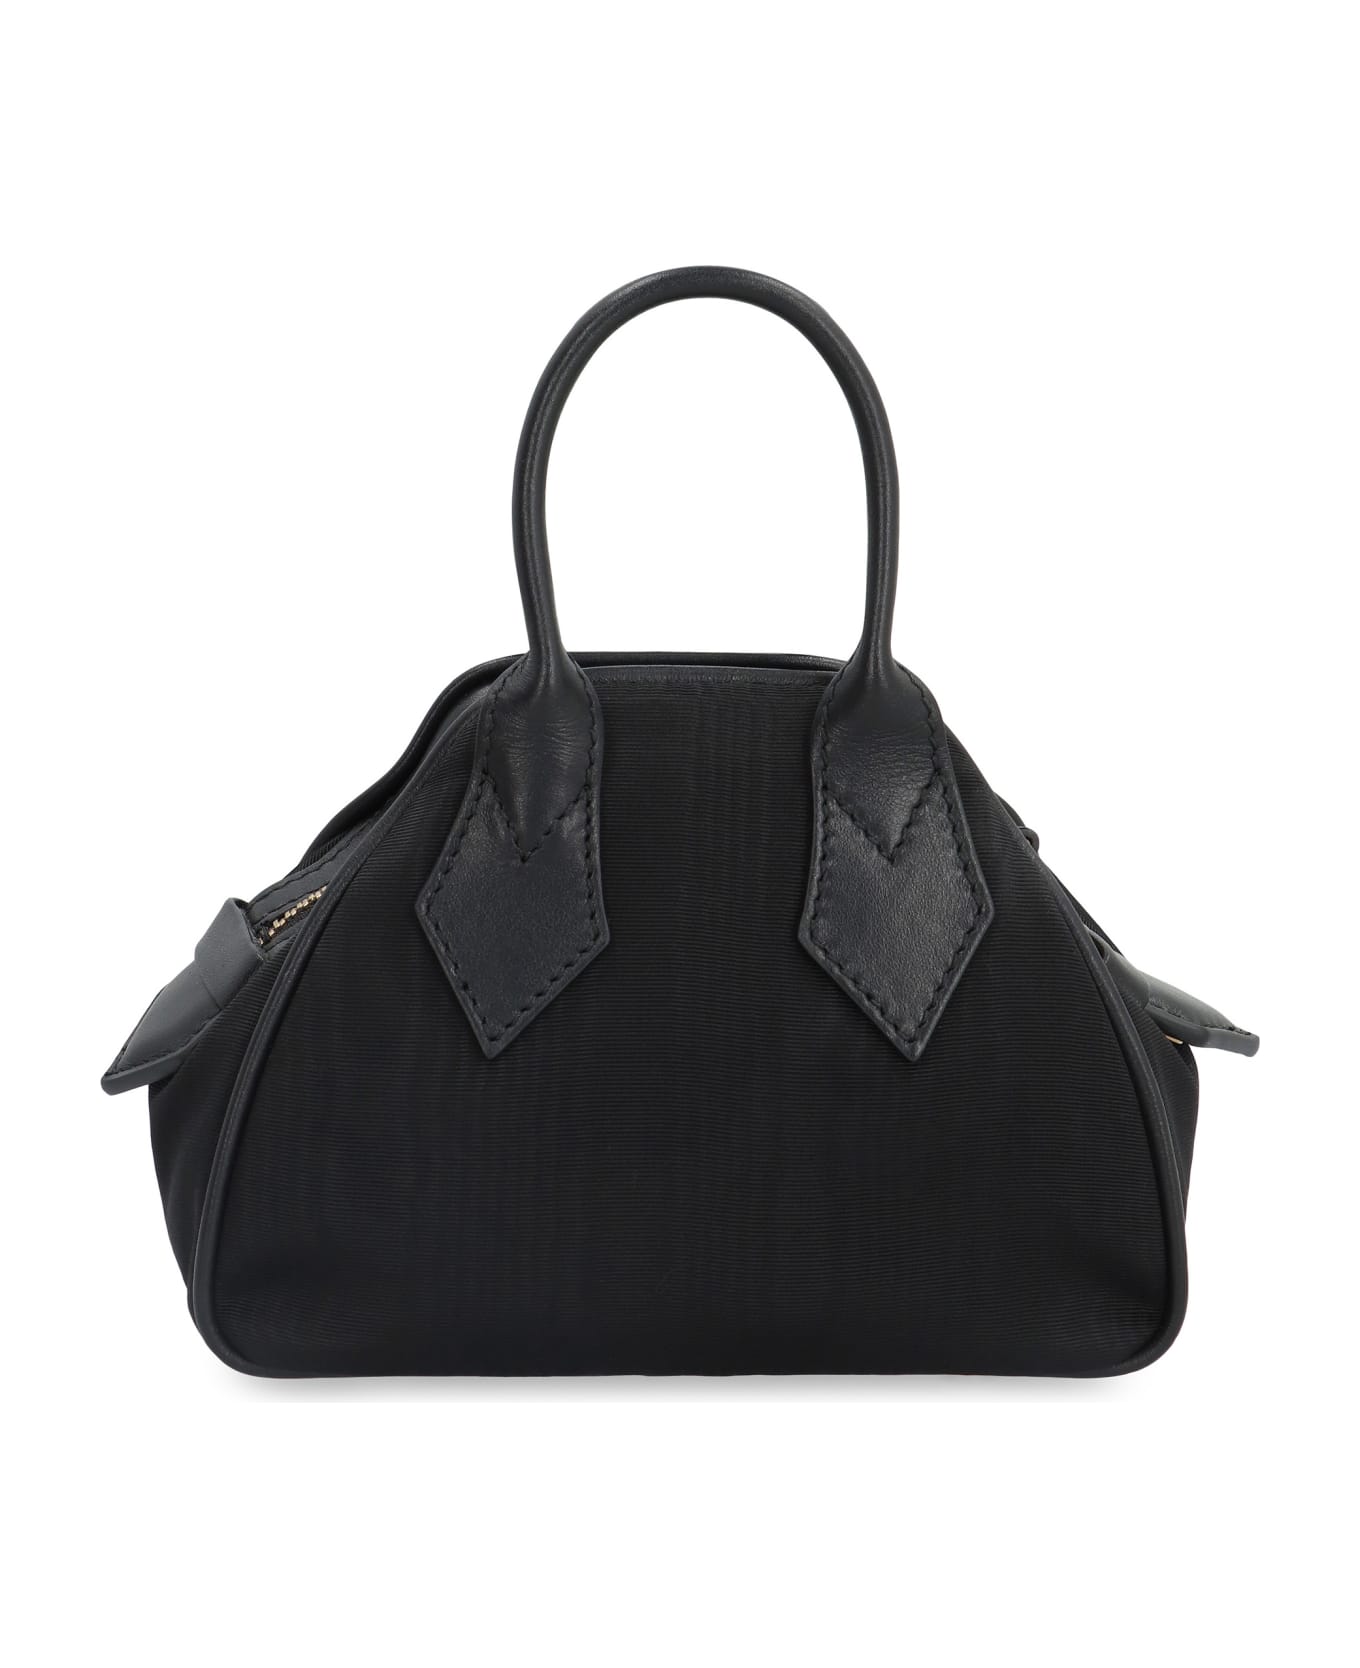 Vivienne Westwood Yasmine Mini Bag - black